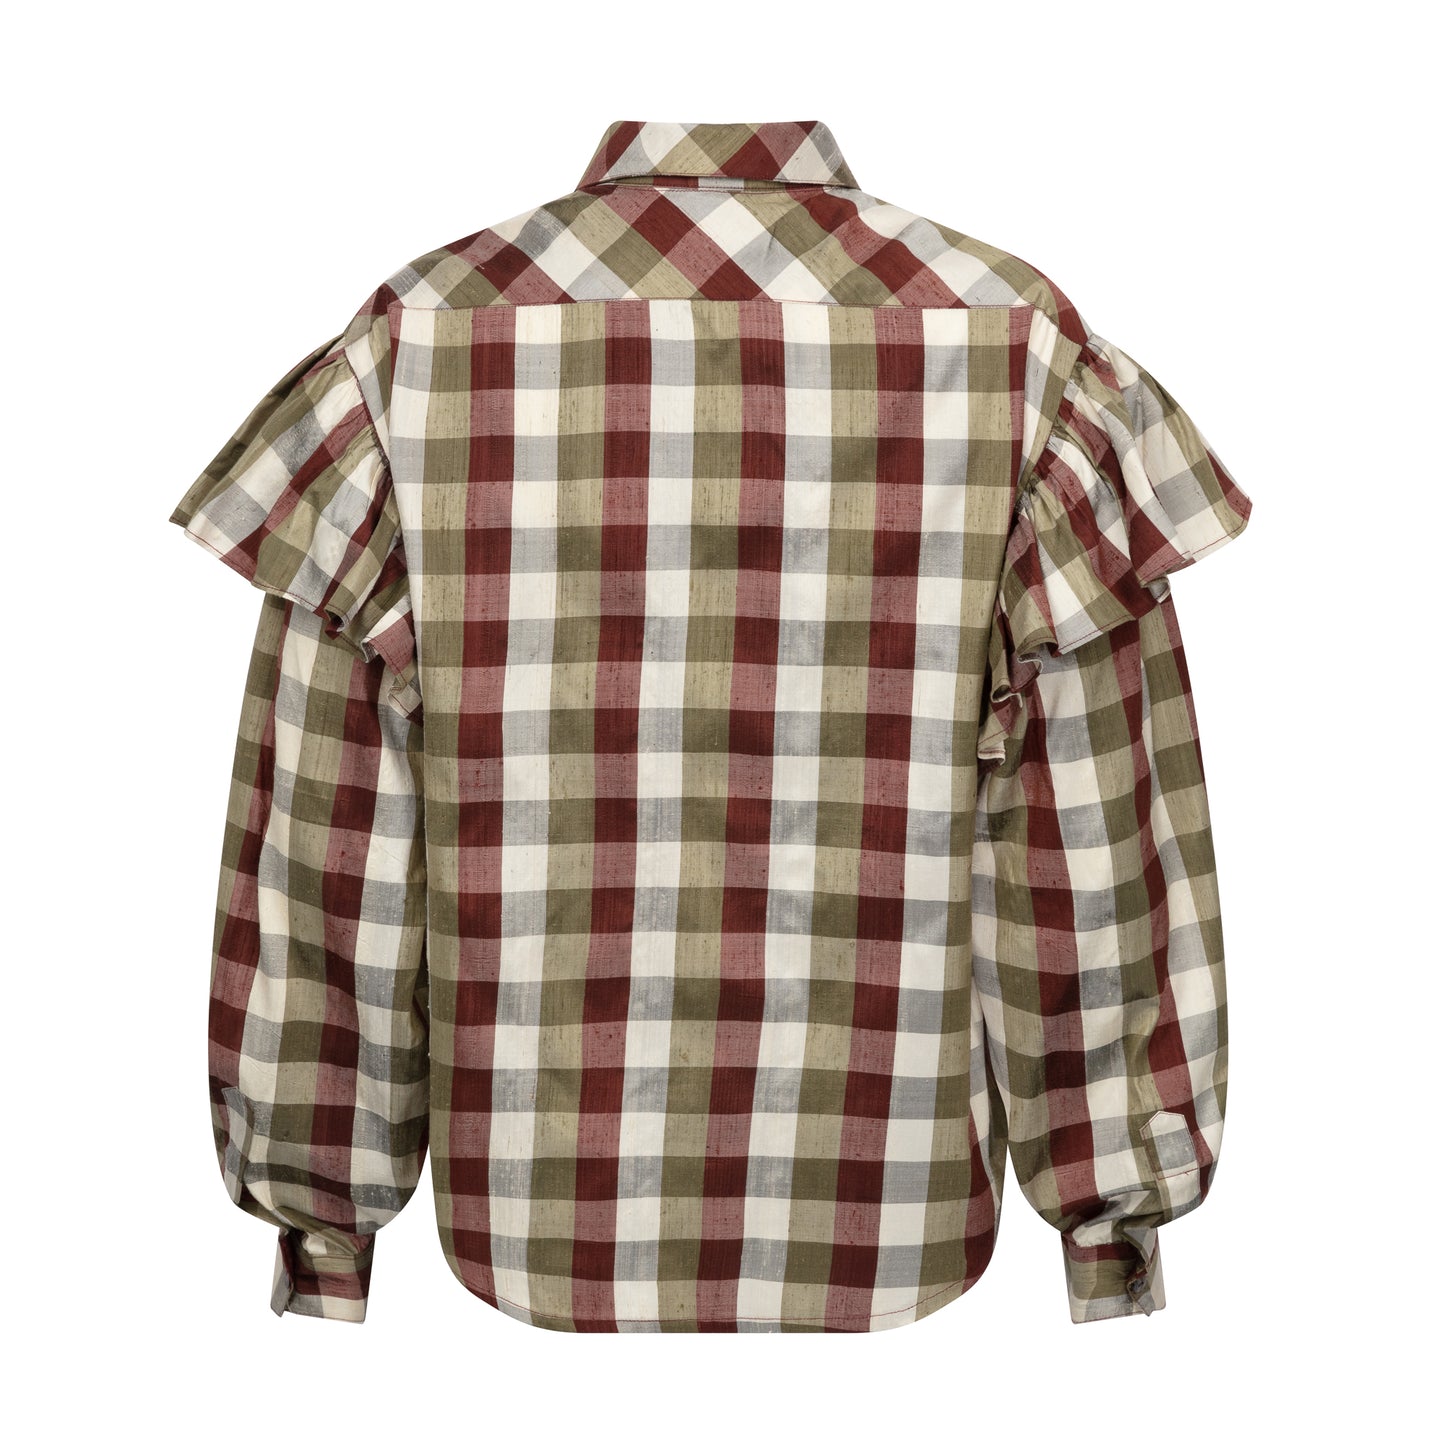 Anūrmi Shirt: Khaki Check House of Bilimoria